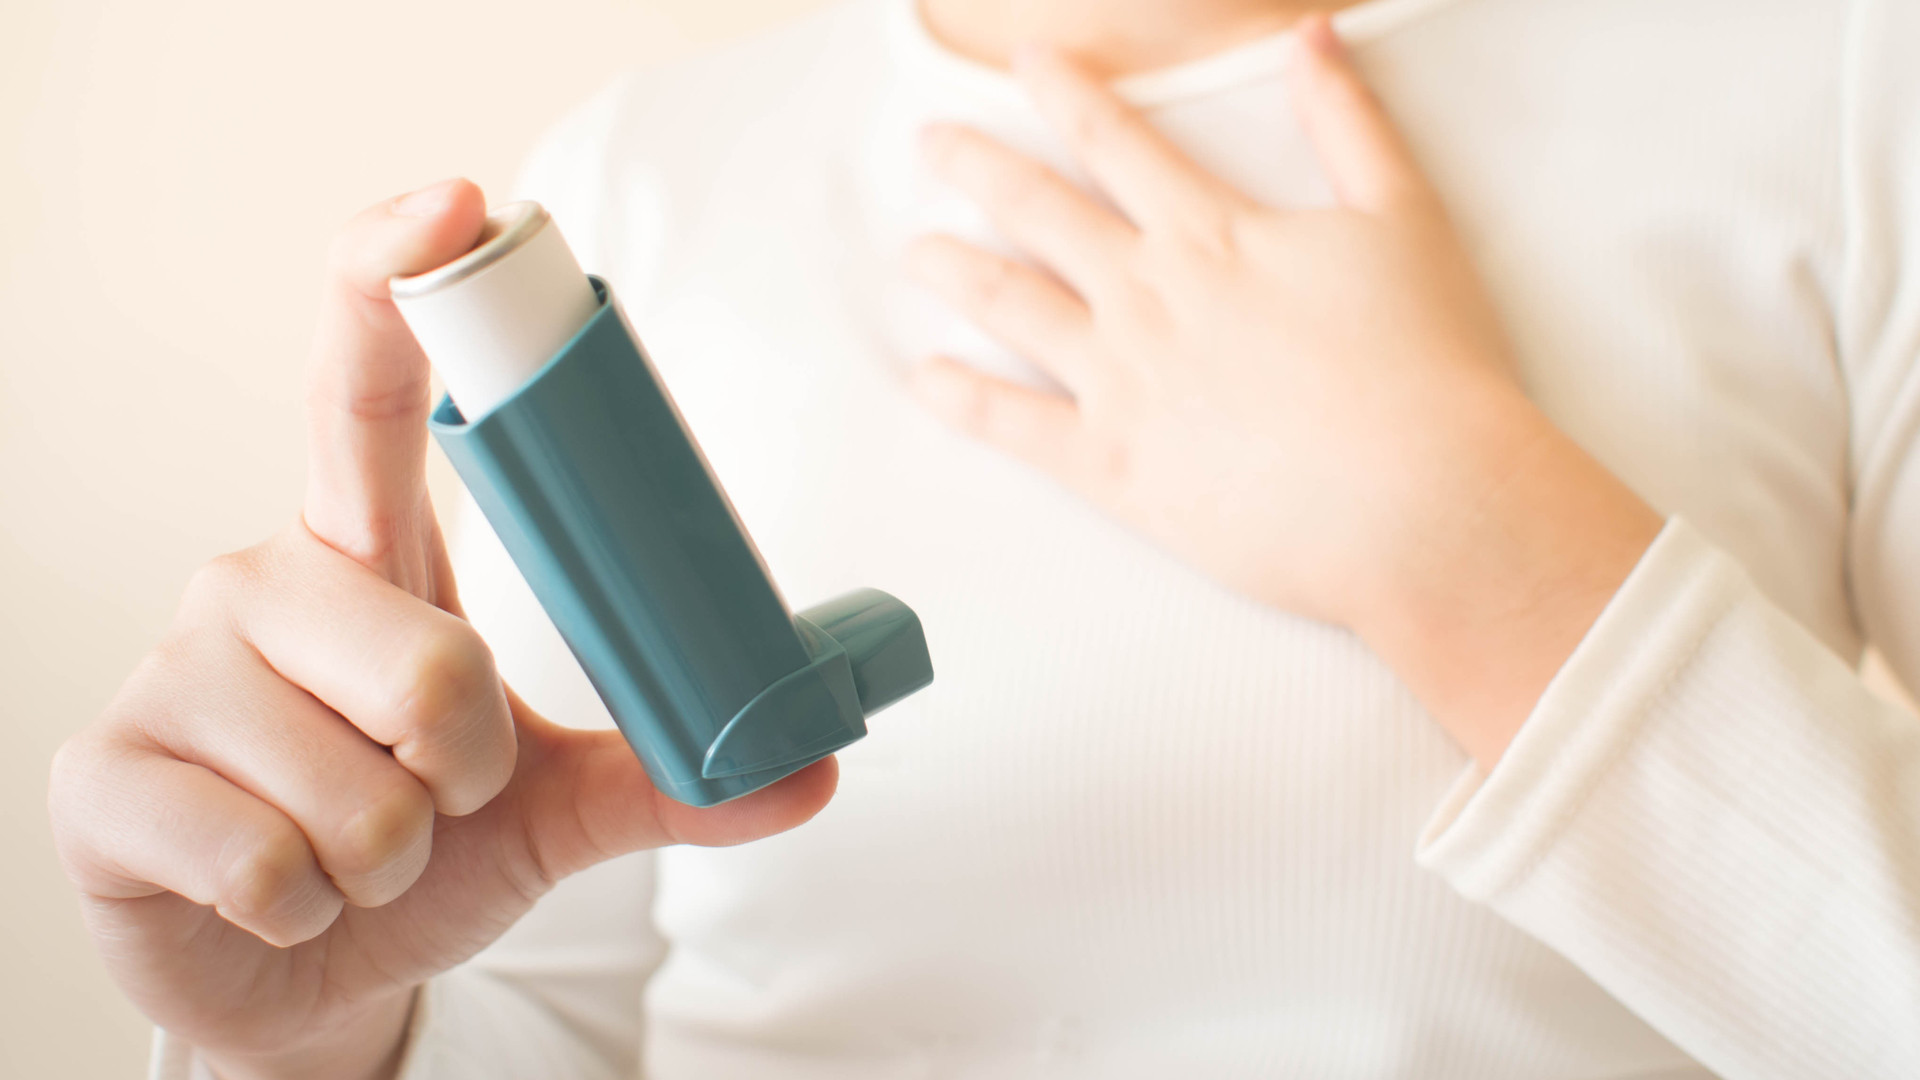 氣喘依賴緩解型吸入劑增急診、死亡風險！醫：吸入性類固醇才能固本